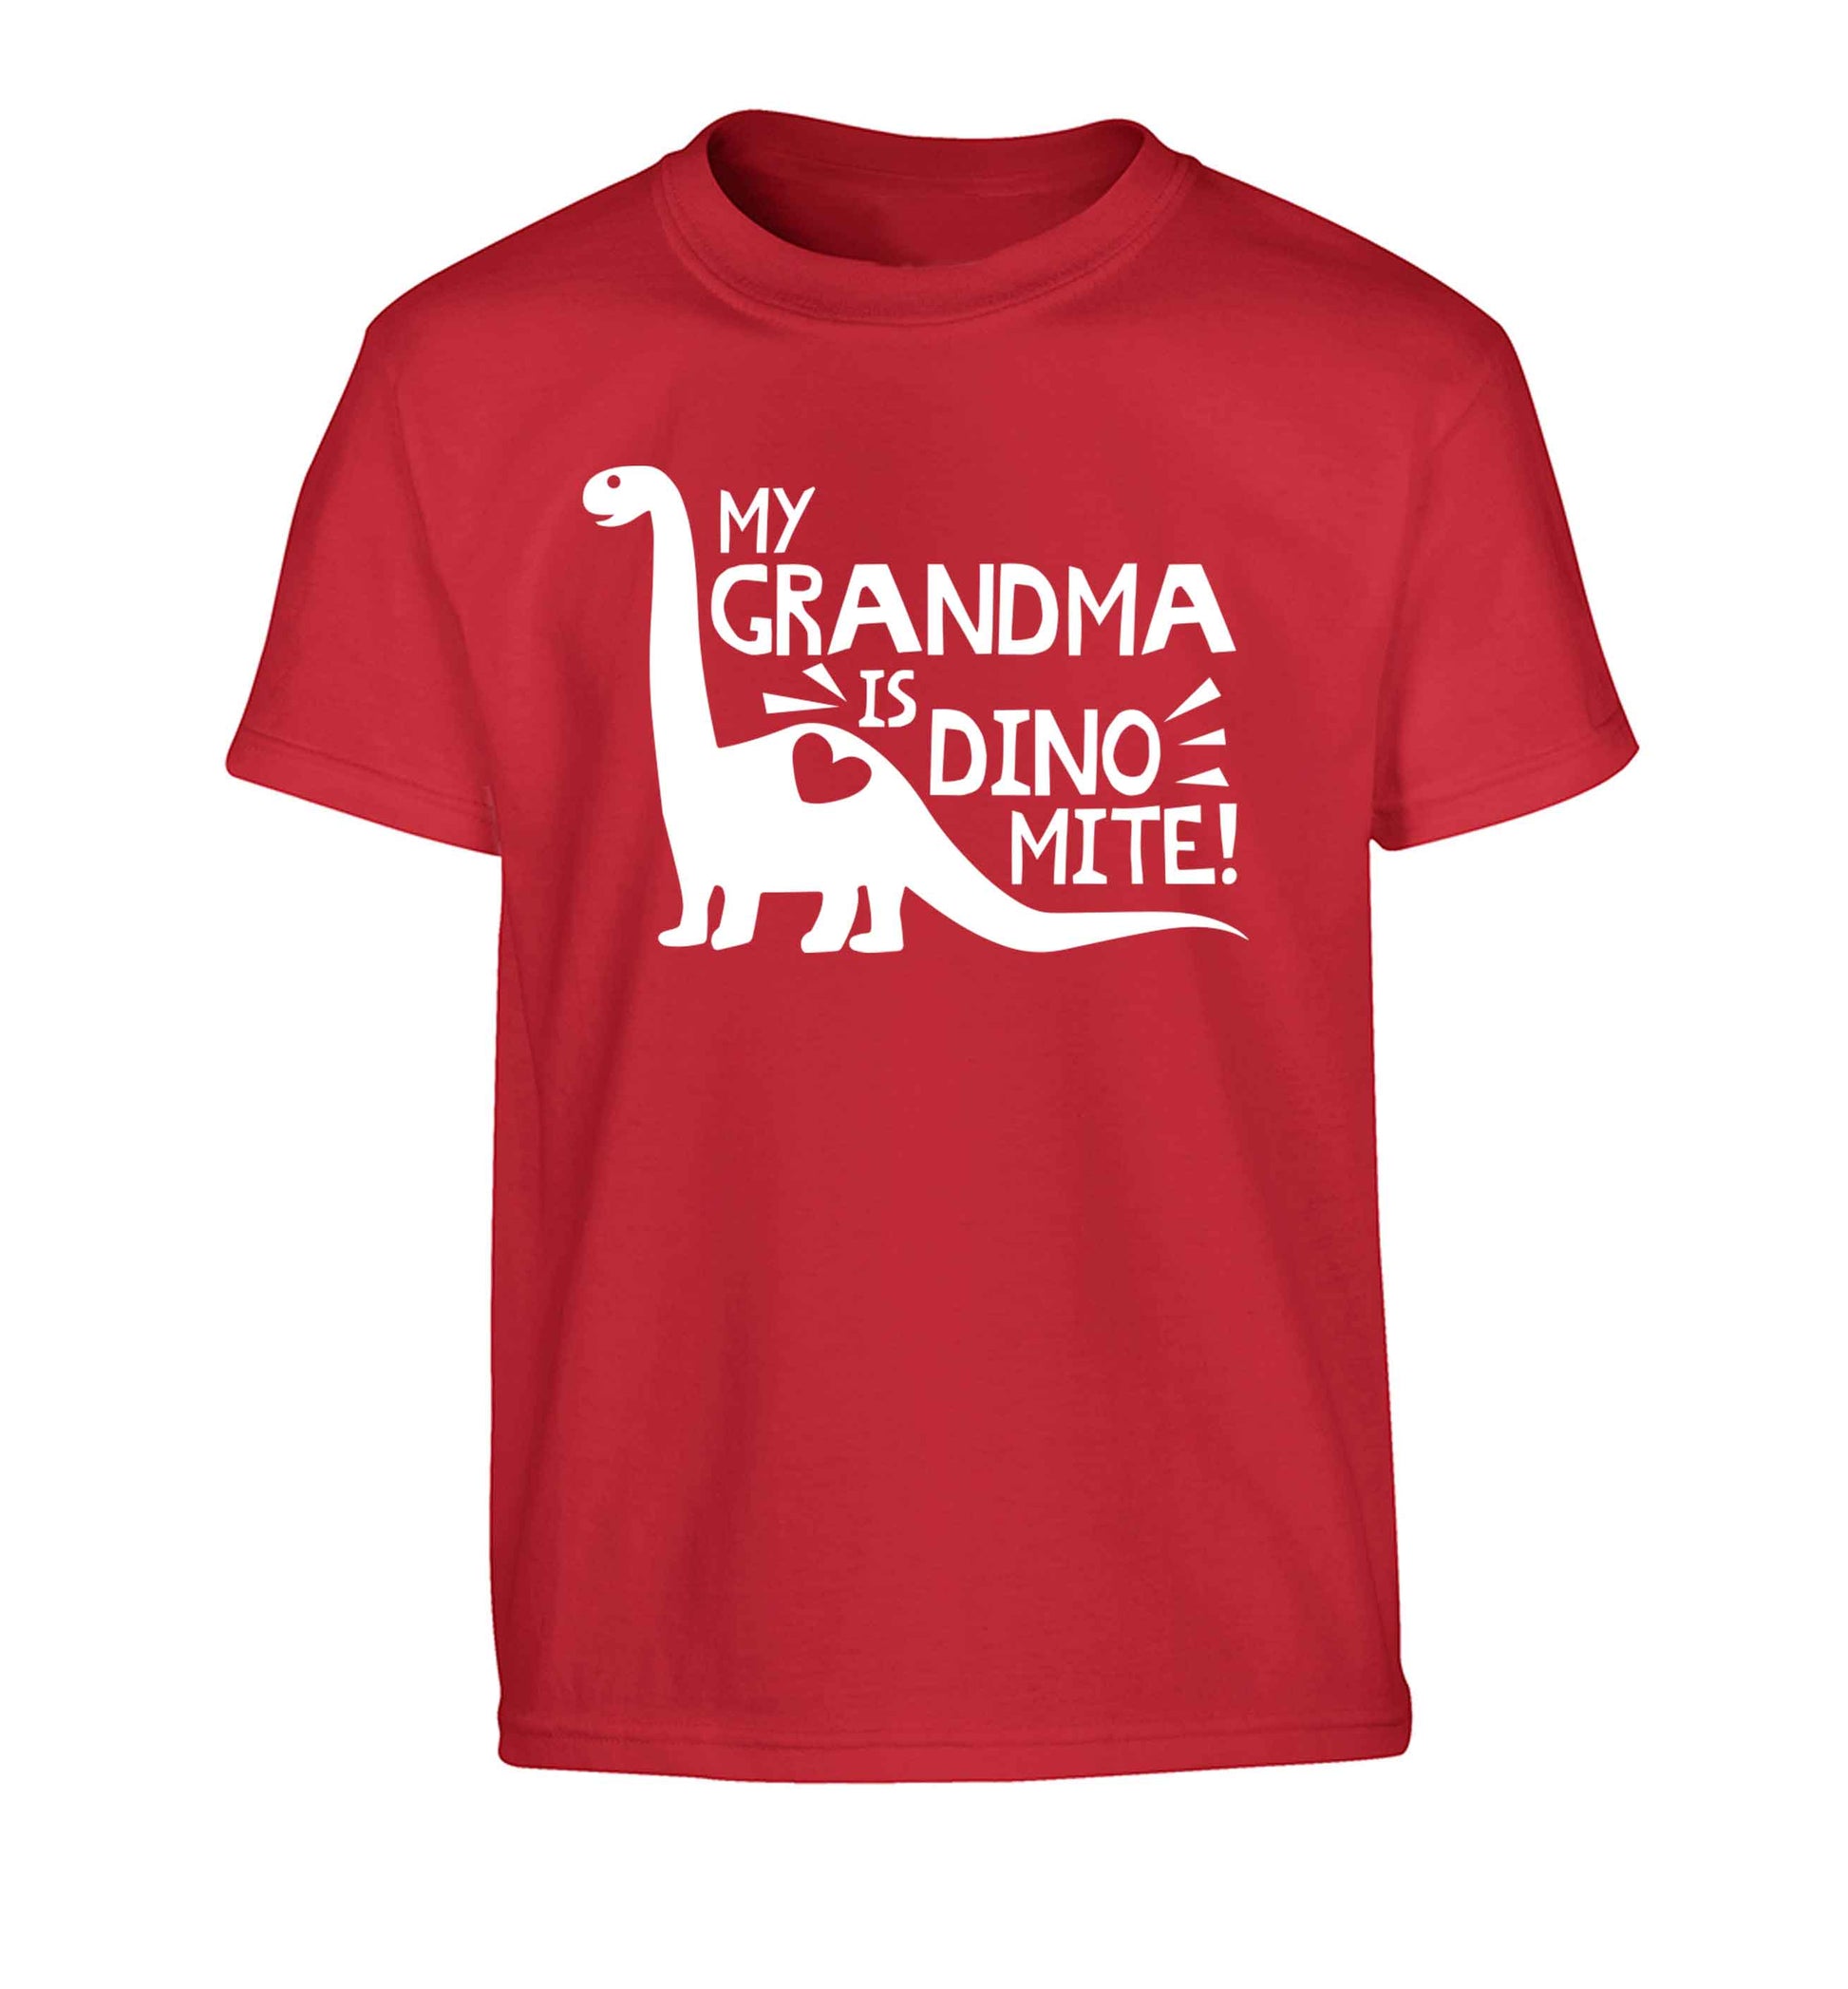 My grandma is dinomite! Children's red Tshirt 12-13 Years